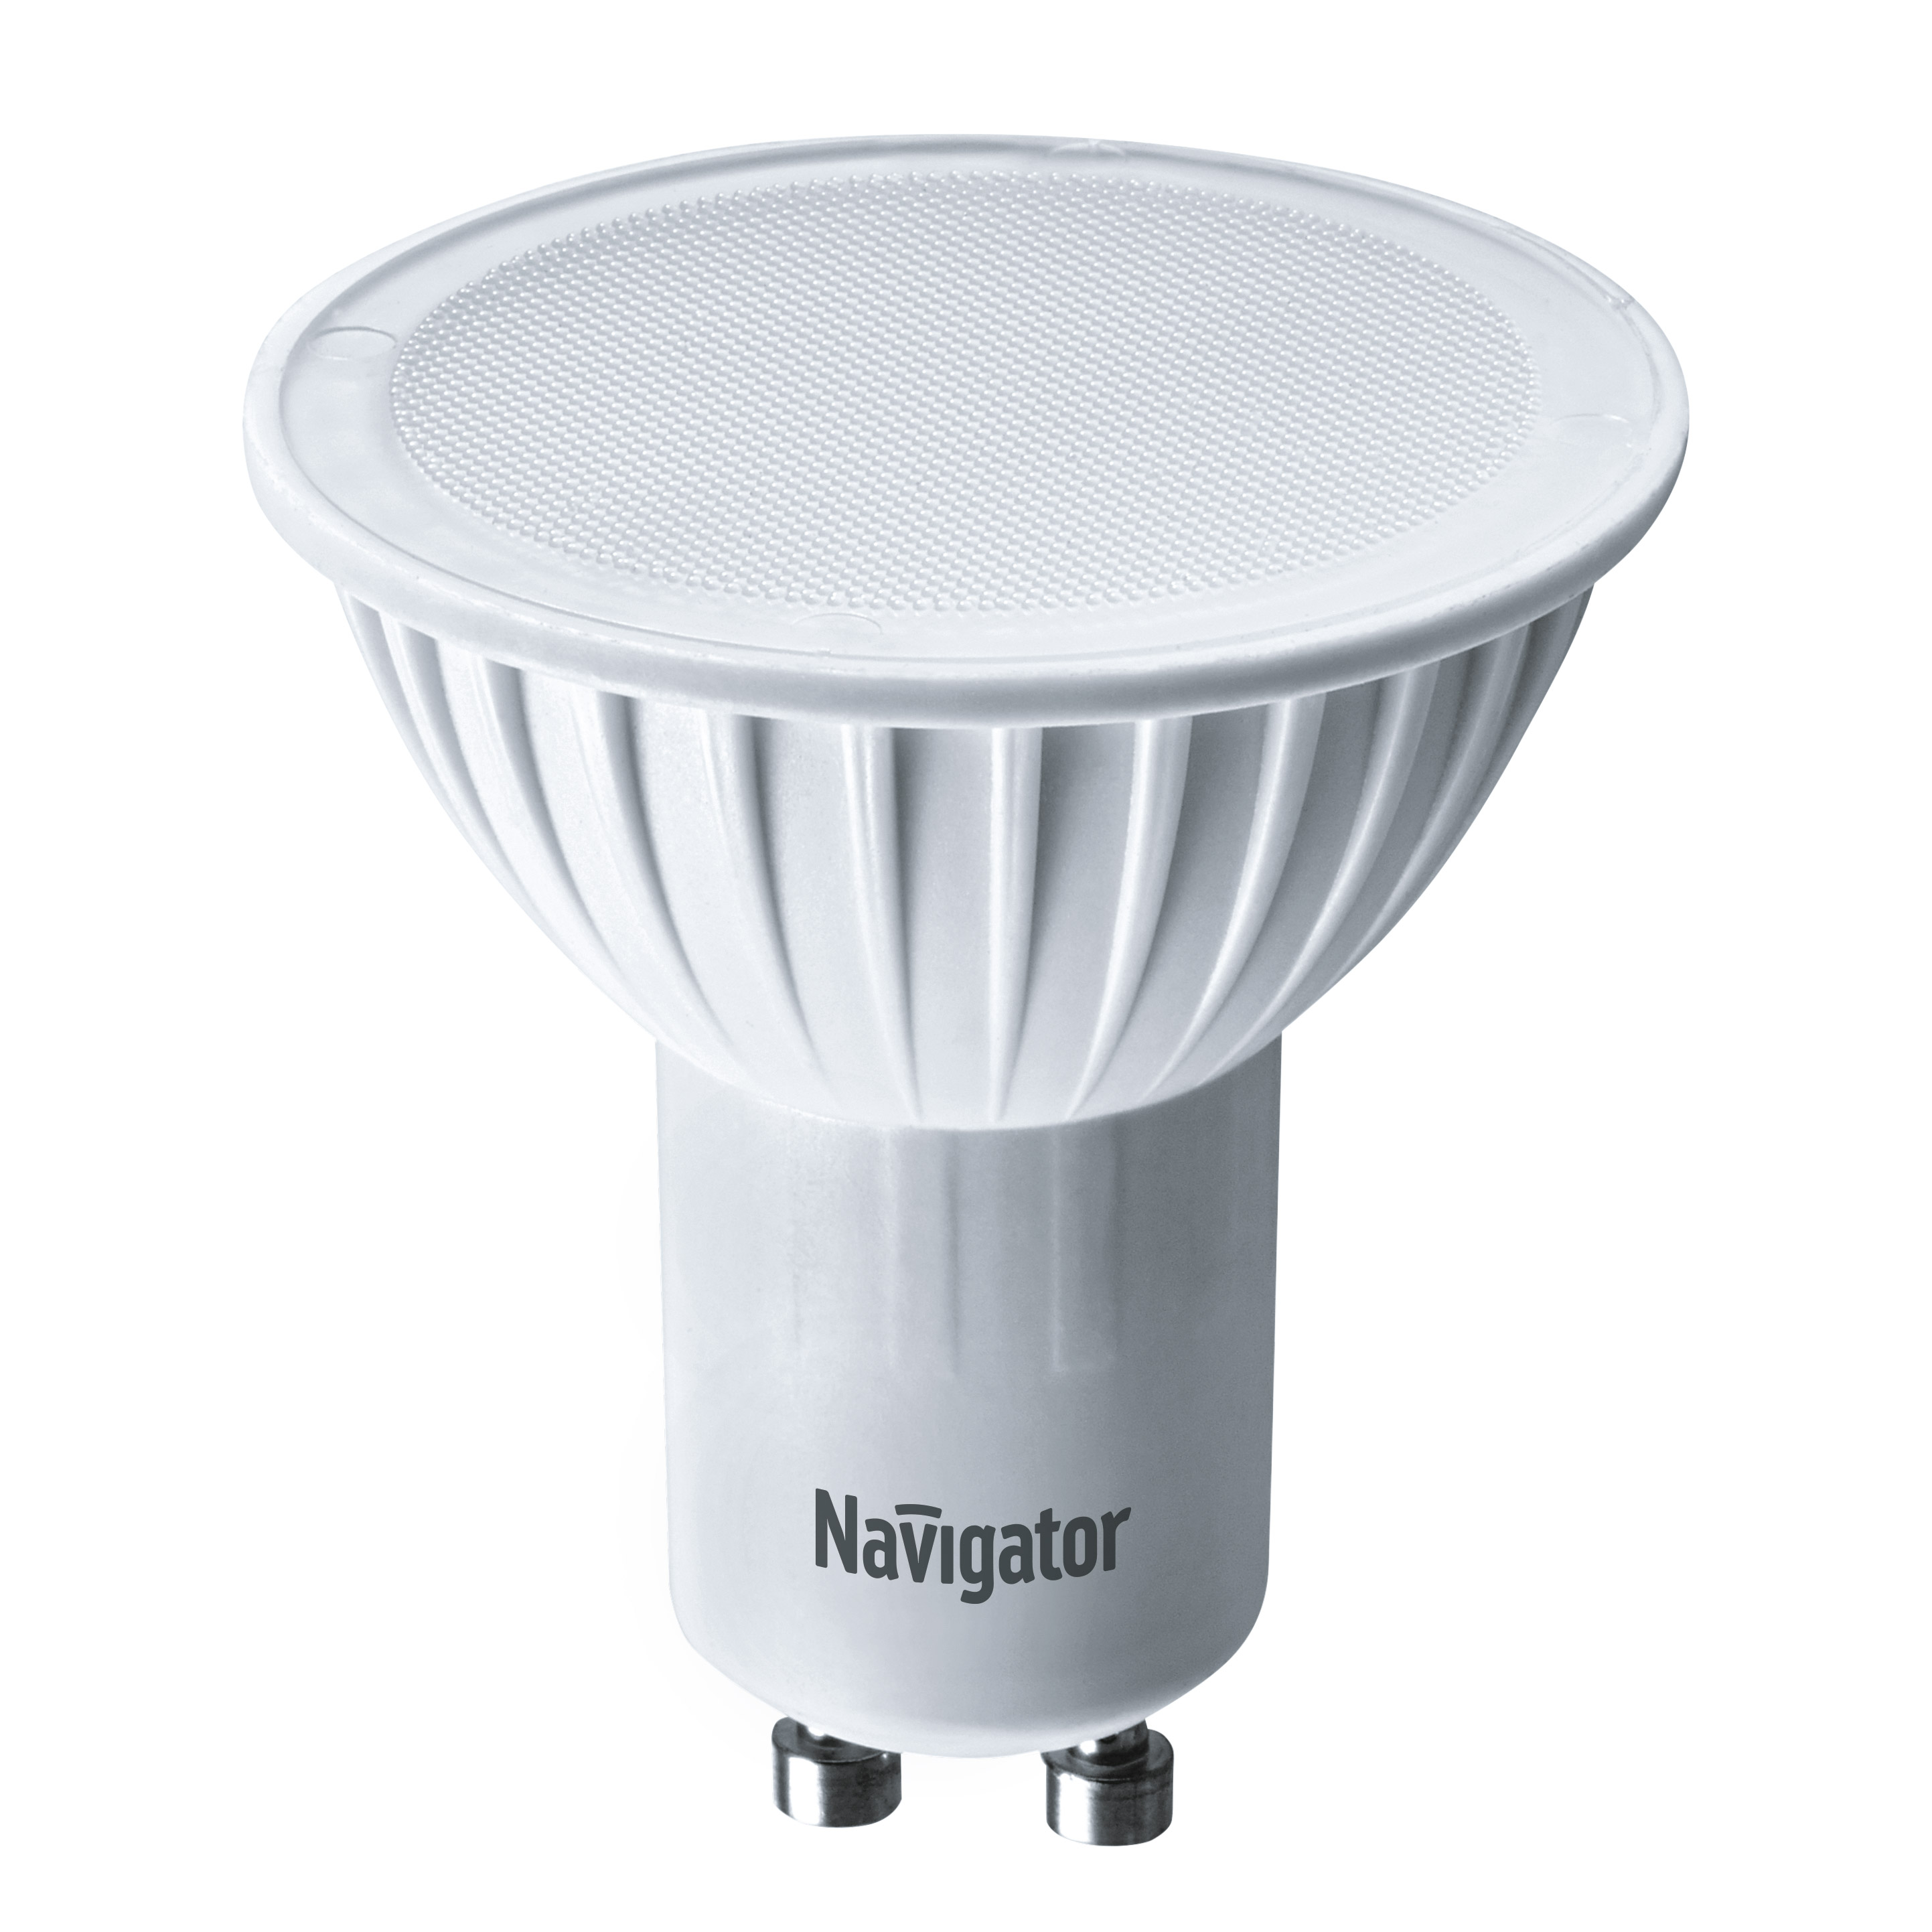 Лампа светодиодная Navigator PAR16 5Вт цоколь GU10 (теплый свет) лампа светодиодная navigator зеркальная r50 5вт цоколь e14 холодный свет